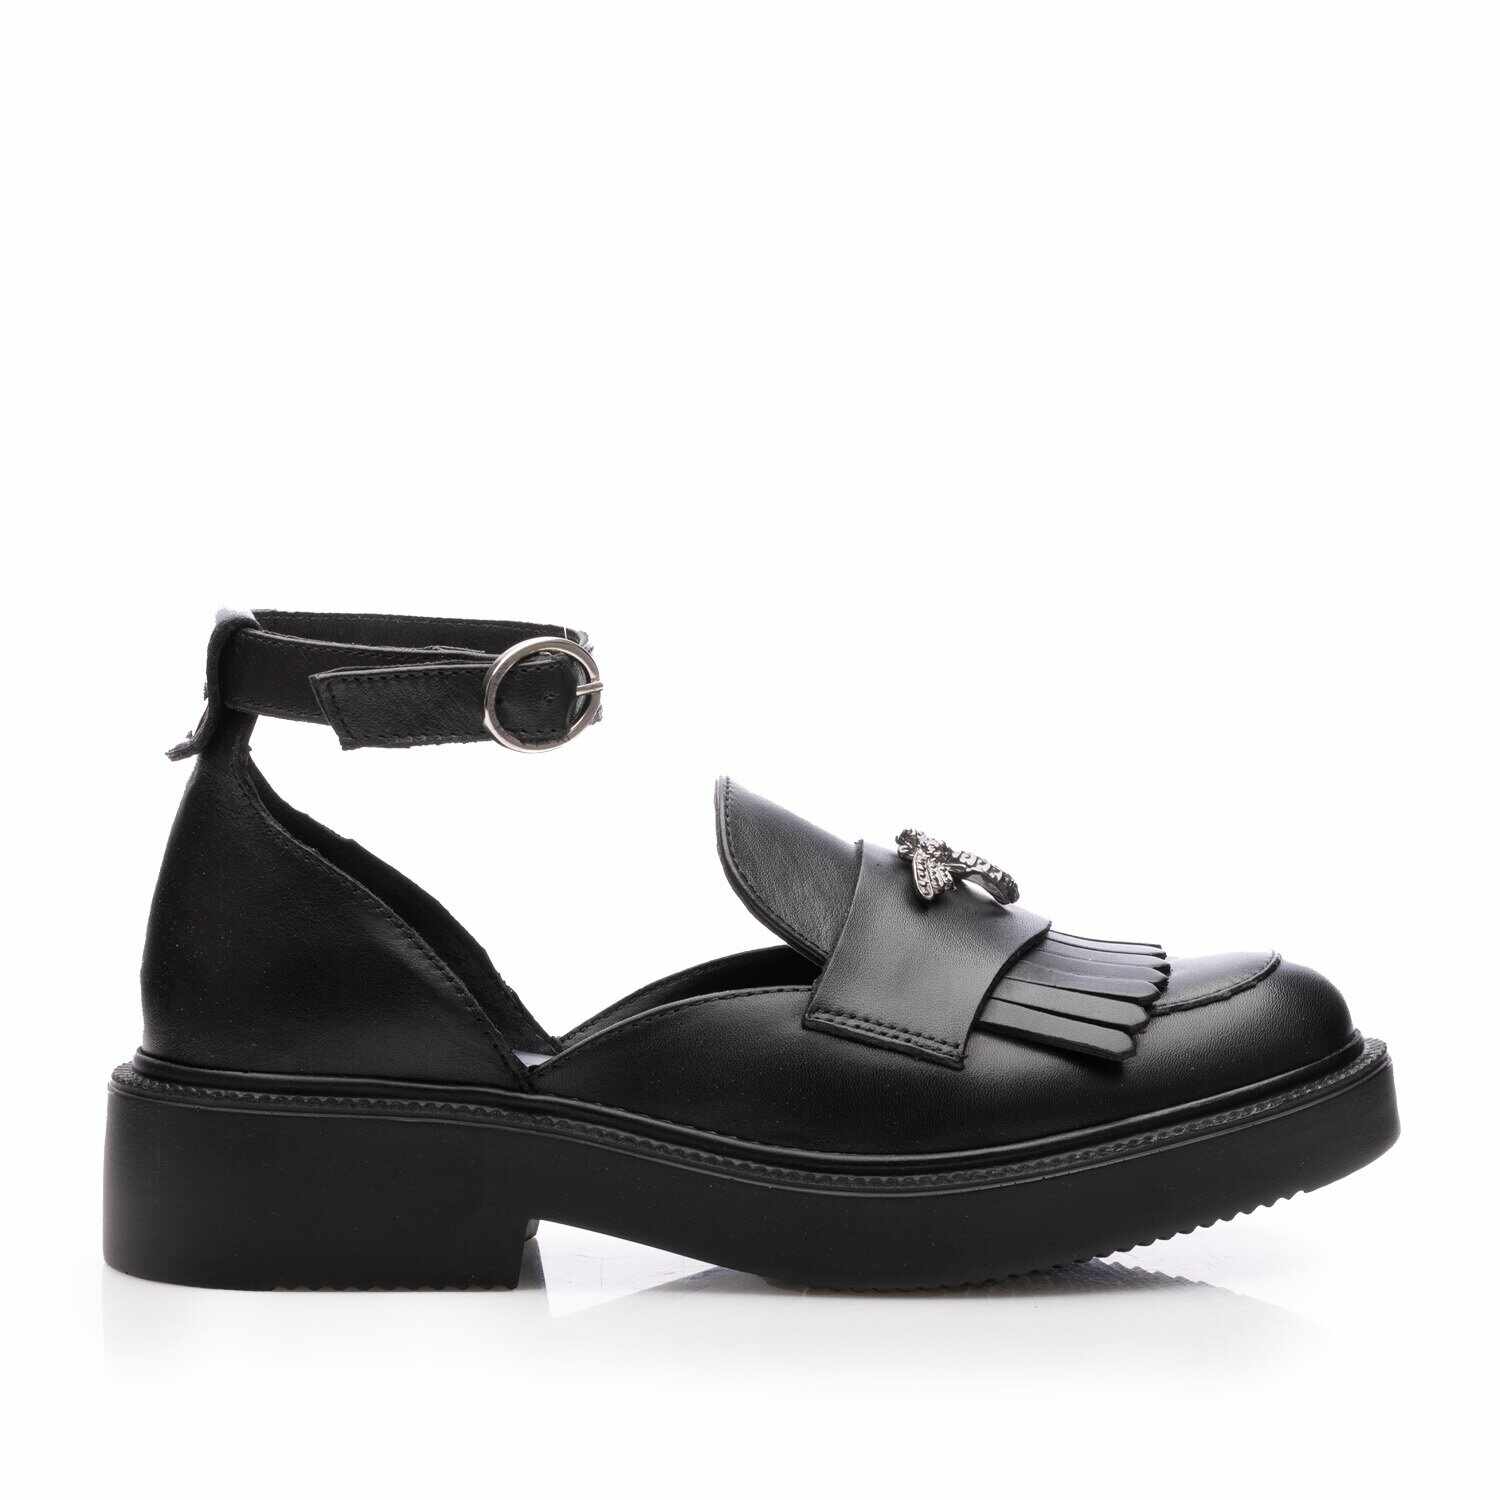 Pantofi casual damă din piele naturală,Leofex - 037 Negru Box